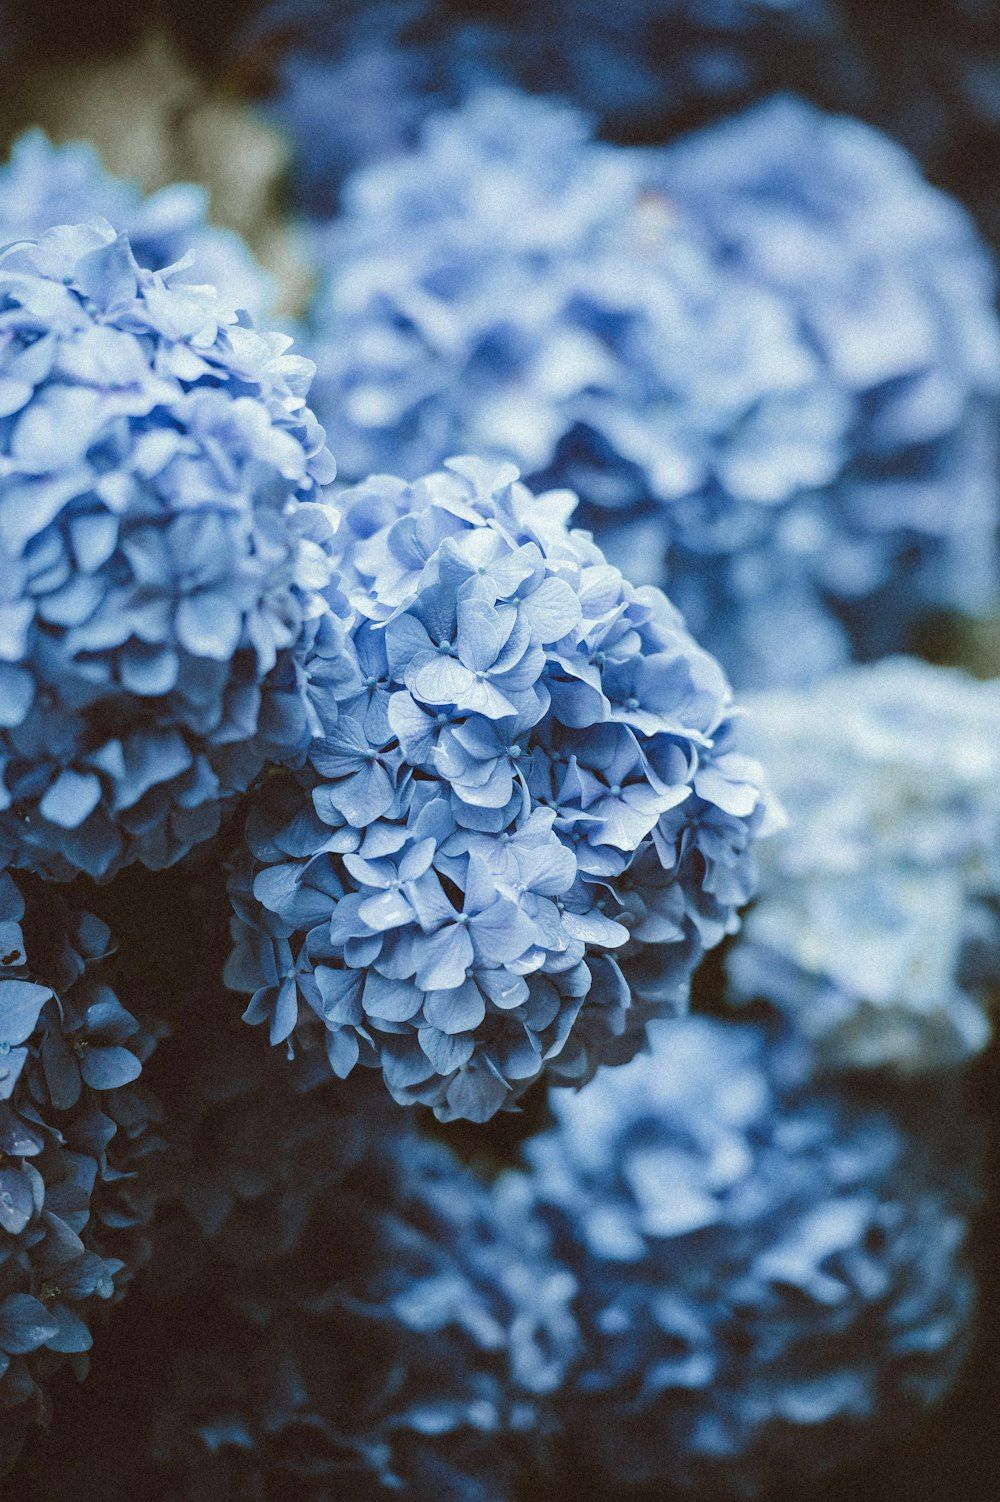  Blume Hintergrundbild 1000x1502. Foto zum Thema Blaue Blüten